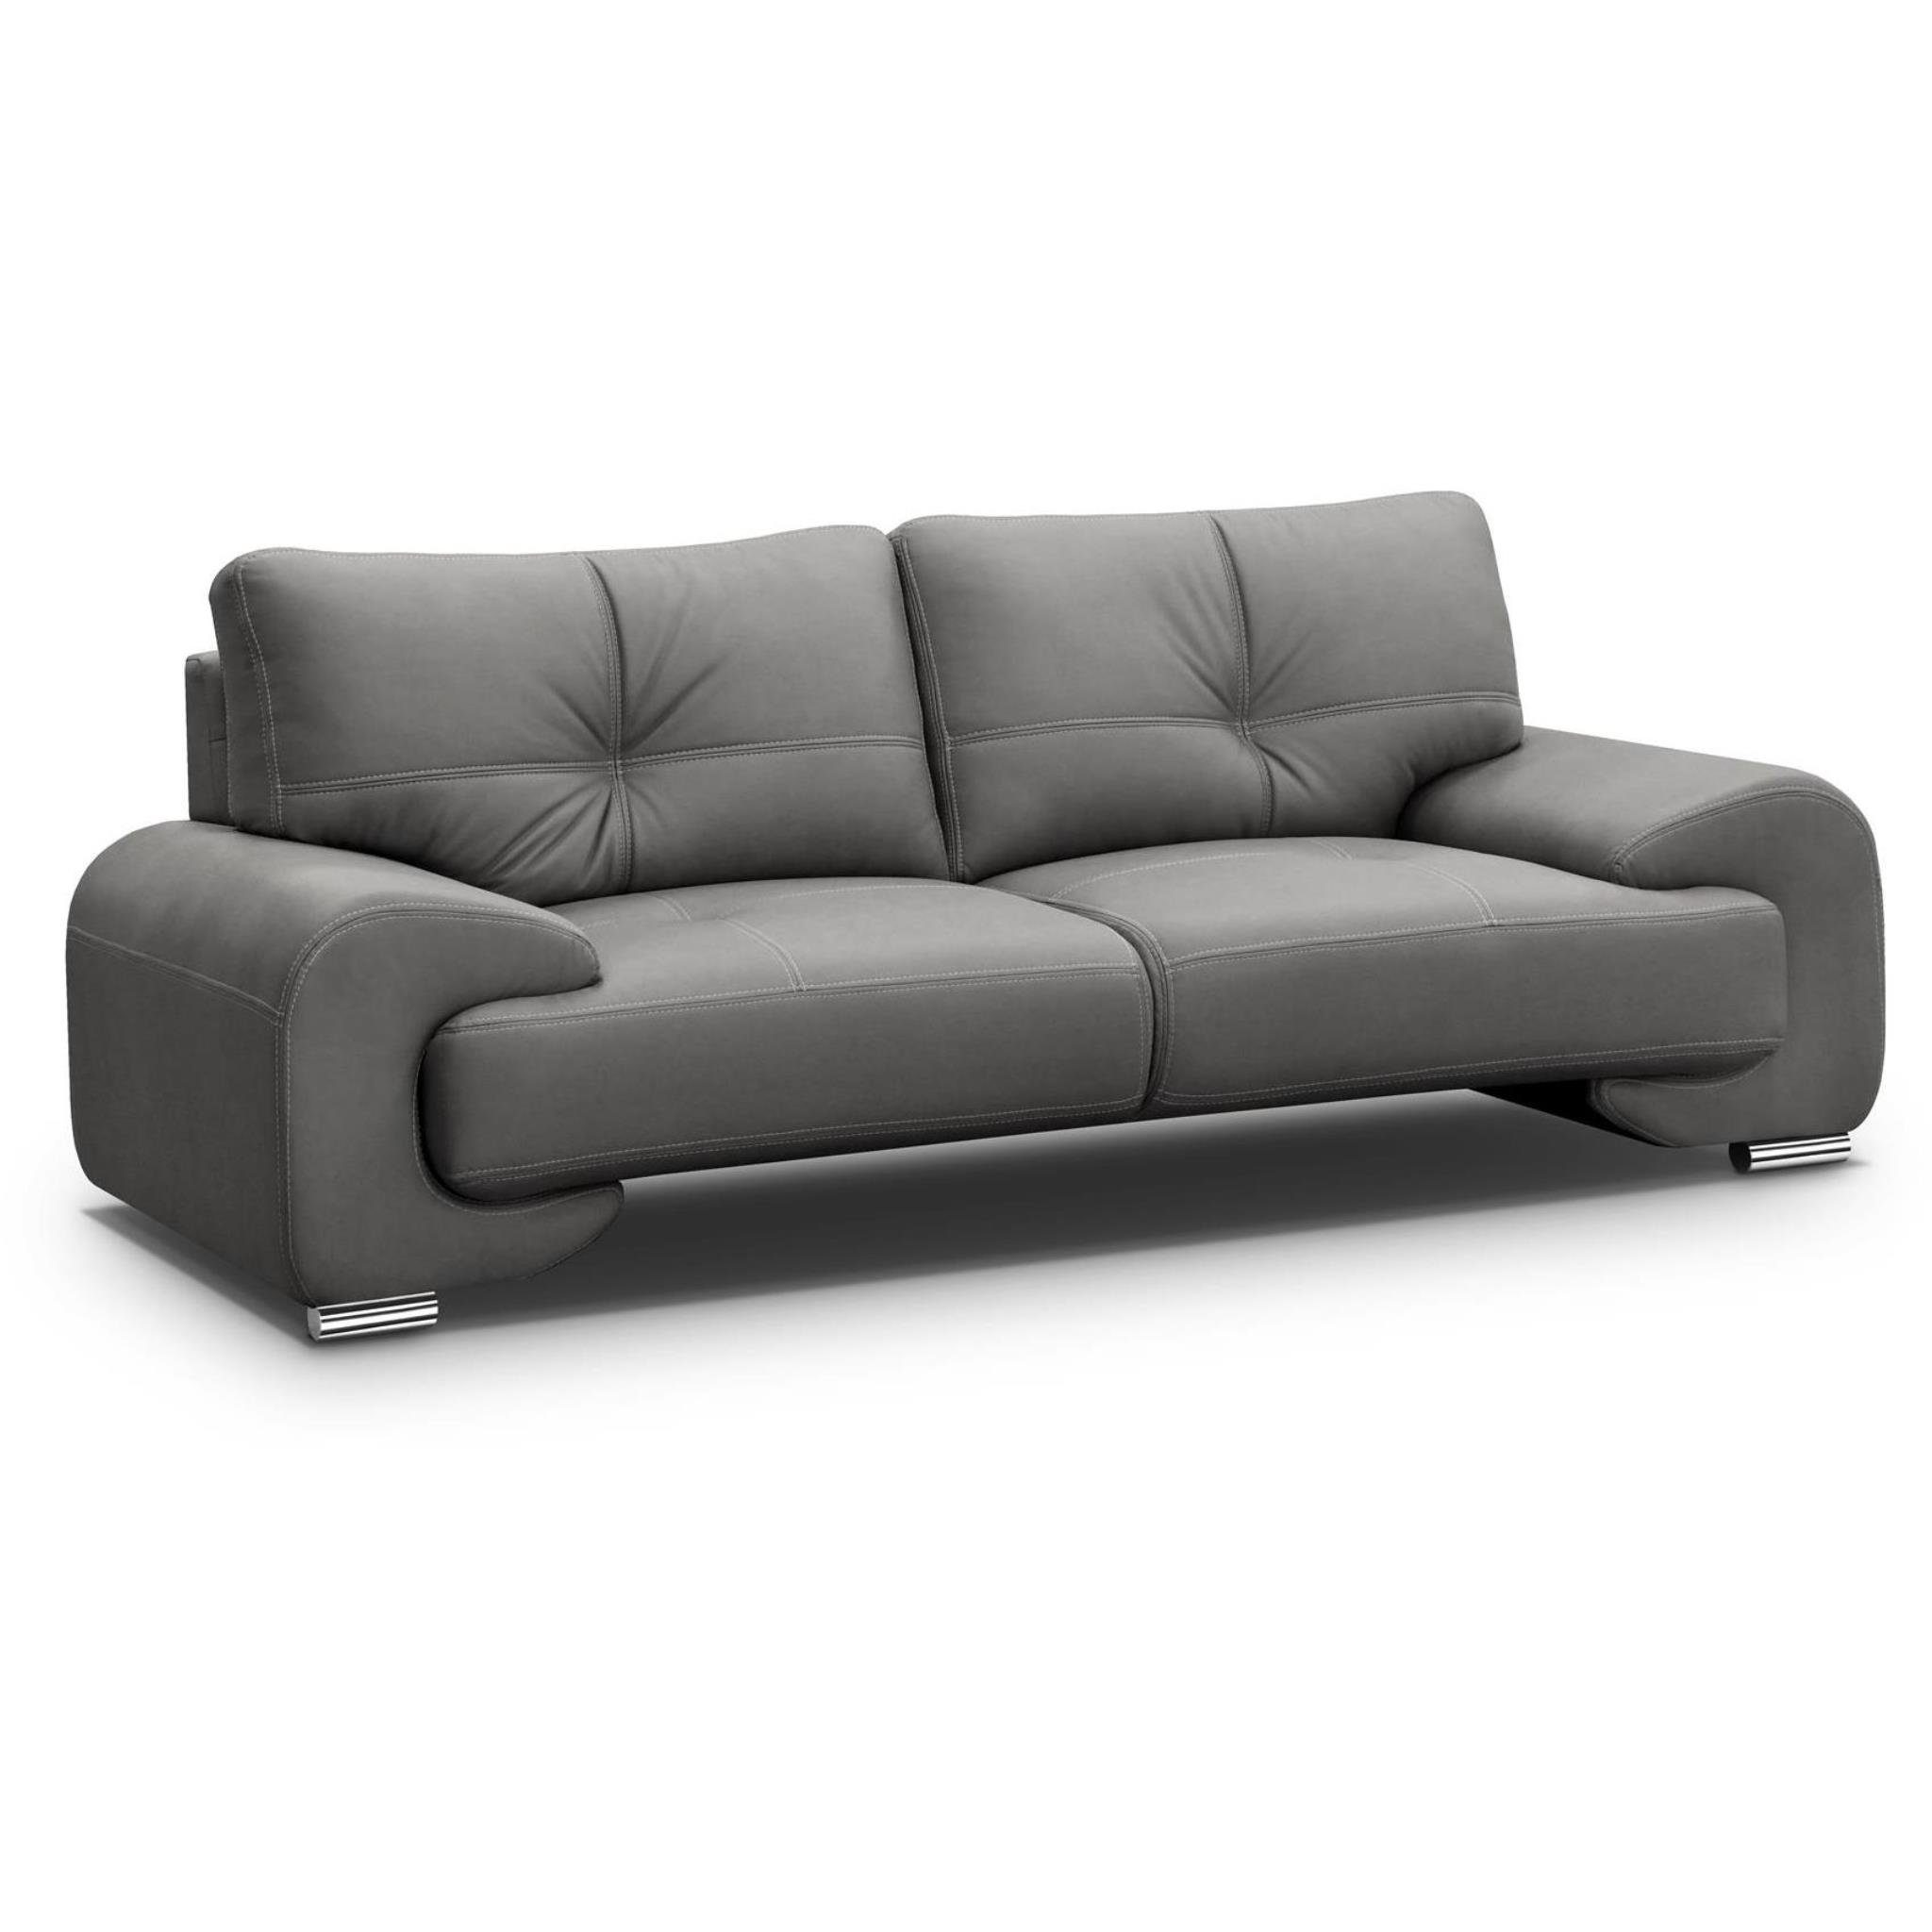 Beautysofa 3-Sitzer Maxime lux, 3-Sitzer Sofa im modernes Design, mit Wellenunterfederung, mit dekorativen Nähten, Kunstleder, Dreisitzer Grau (vega 88)